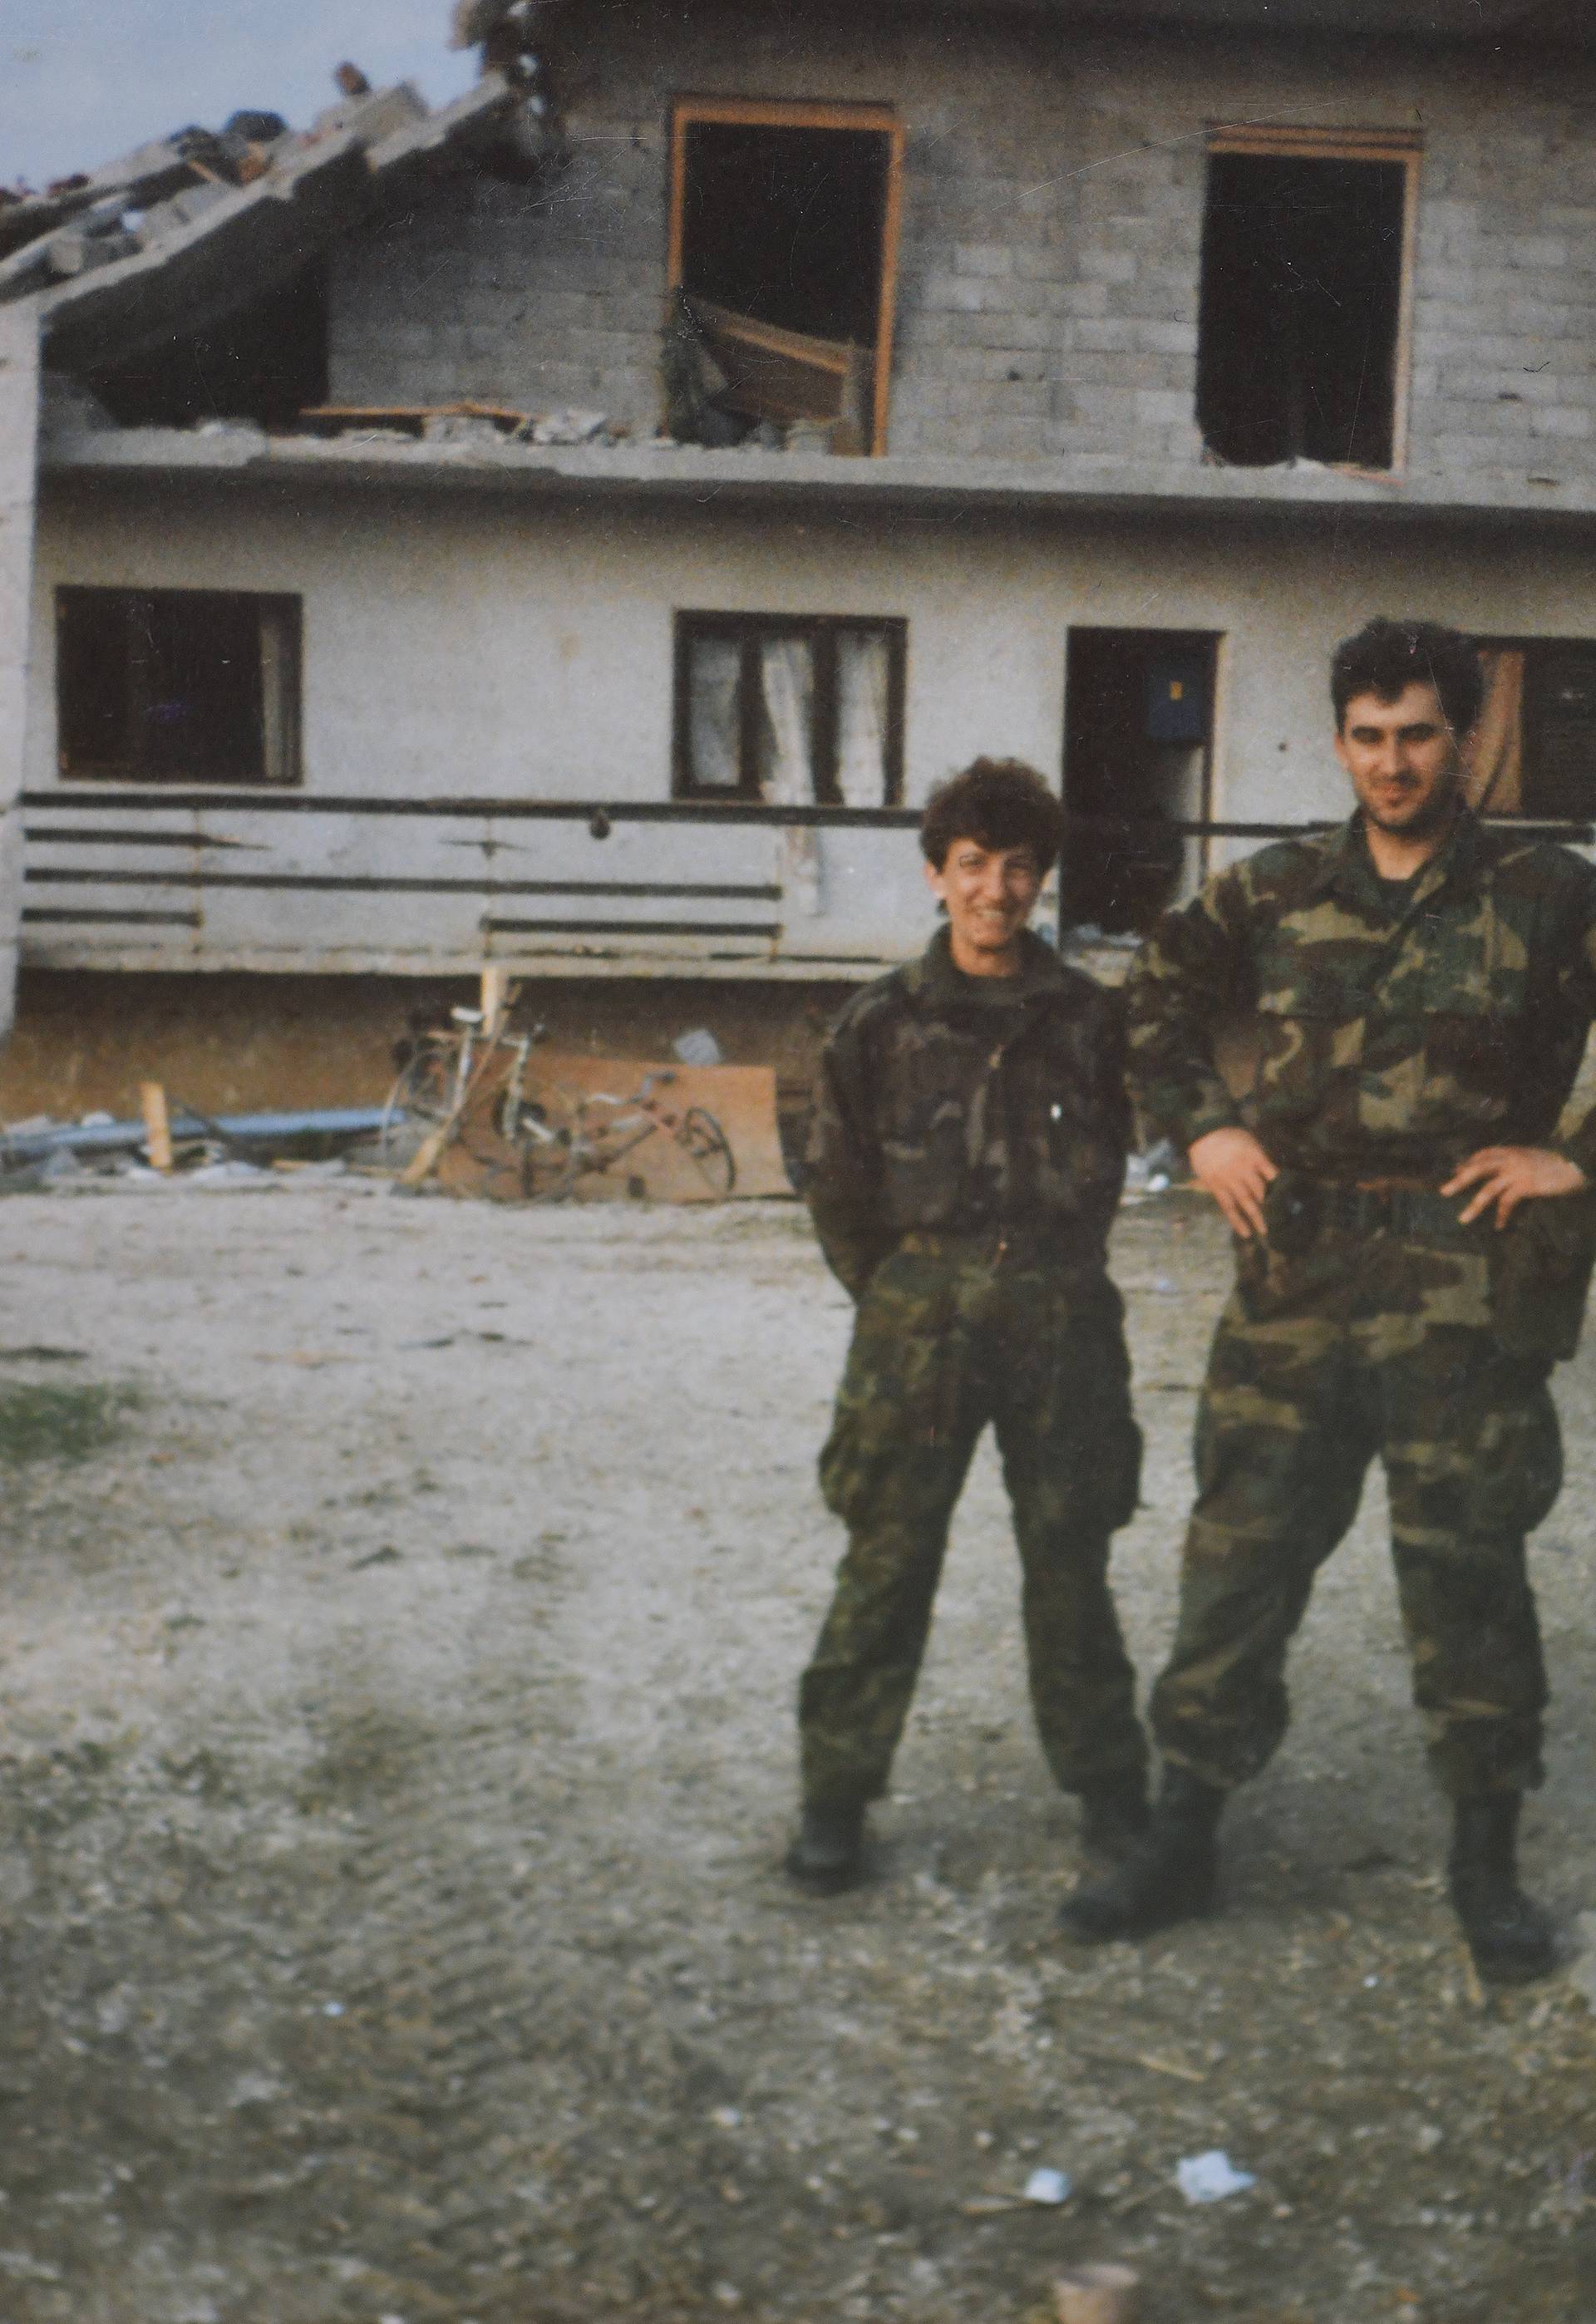 Miru su nakon pada Vukovara zatočili: 'Rekla sam si: Htjela si ići u rat? Sad šuti, trpi i radi'